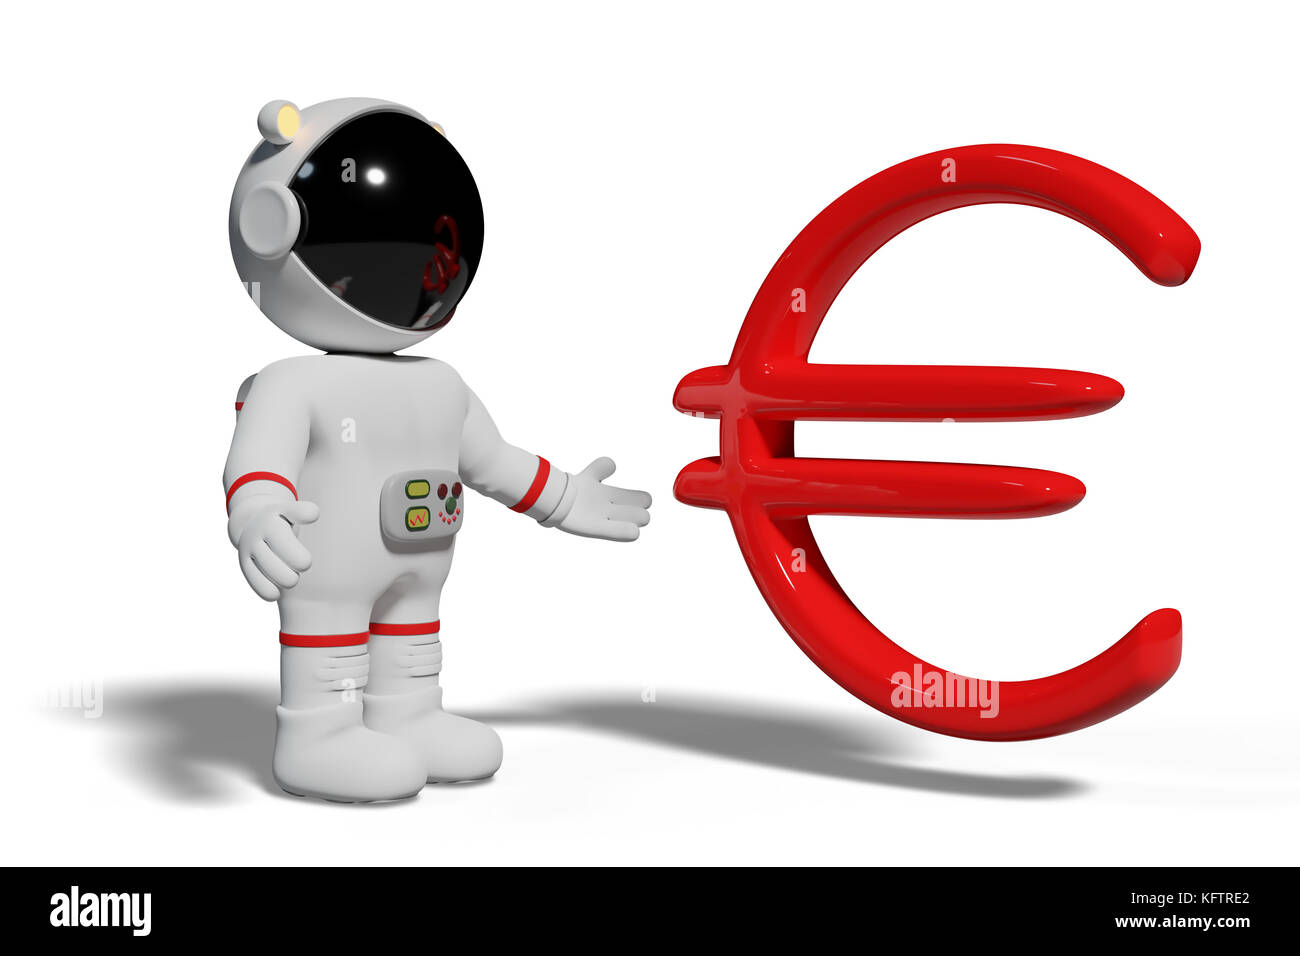 El astronauta mirando rojo signo euro, adorable personaje de dibujos animados con el símbolo de moneda aislado sobre fondo blanco. Foto de stock